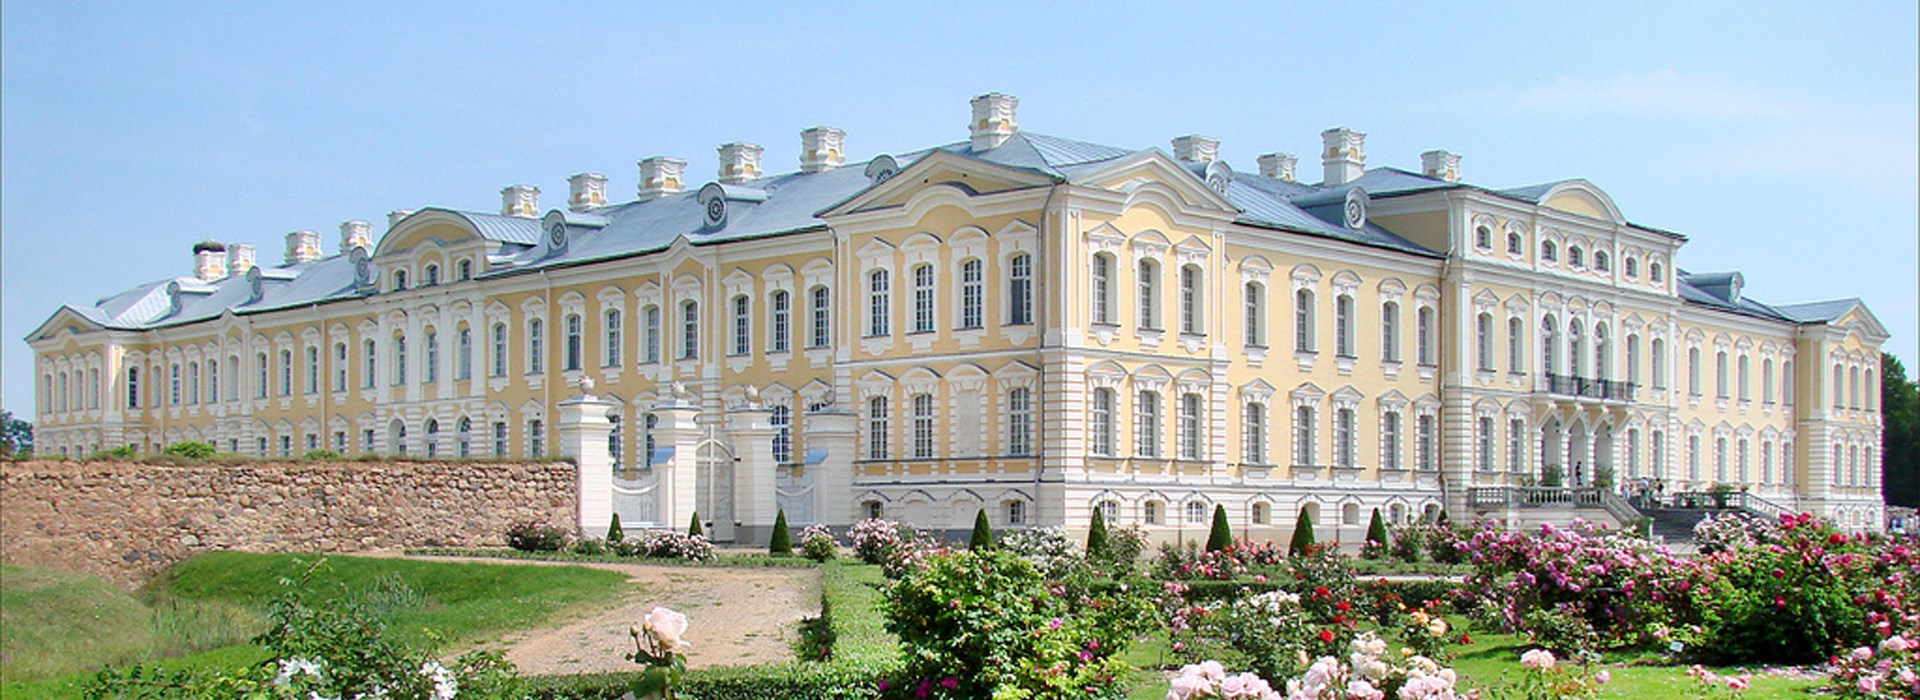 Visiter Le parc du Palais de Catherine - Russie